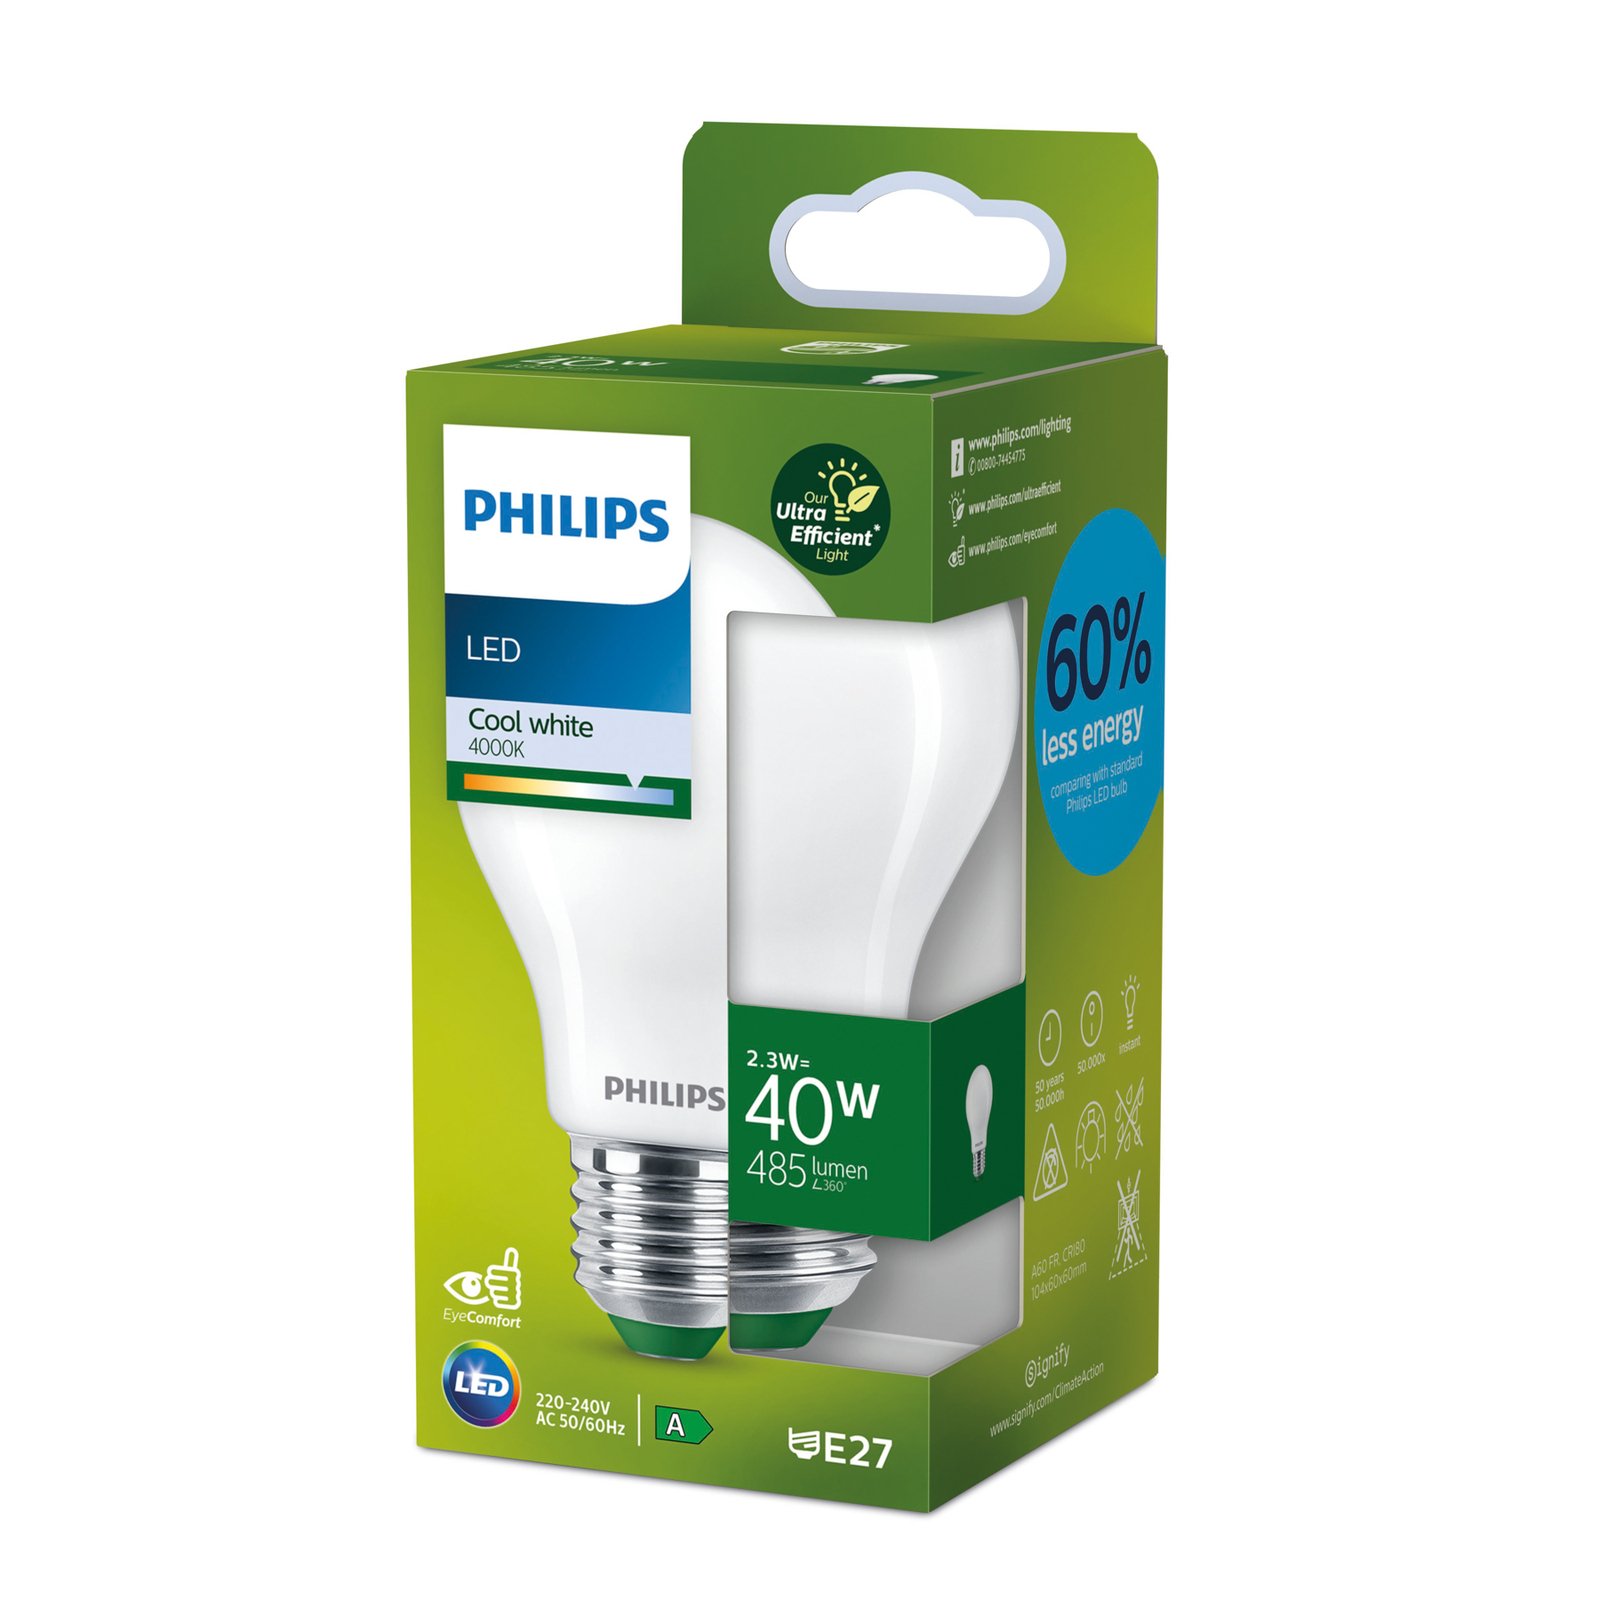 Philips E27 LED bulb A60 2.3W 485lm 4,000K matt